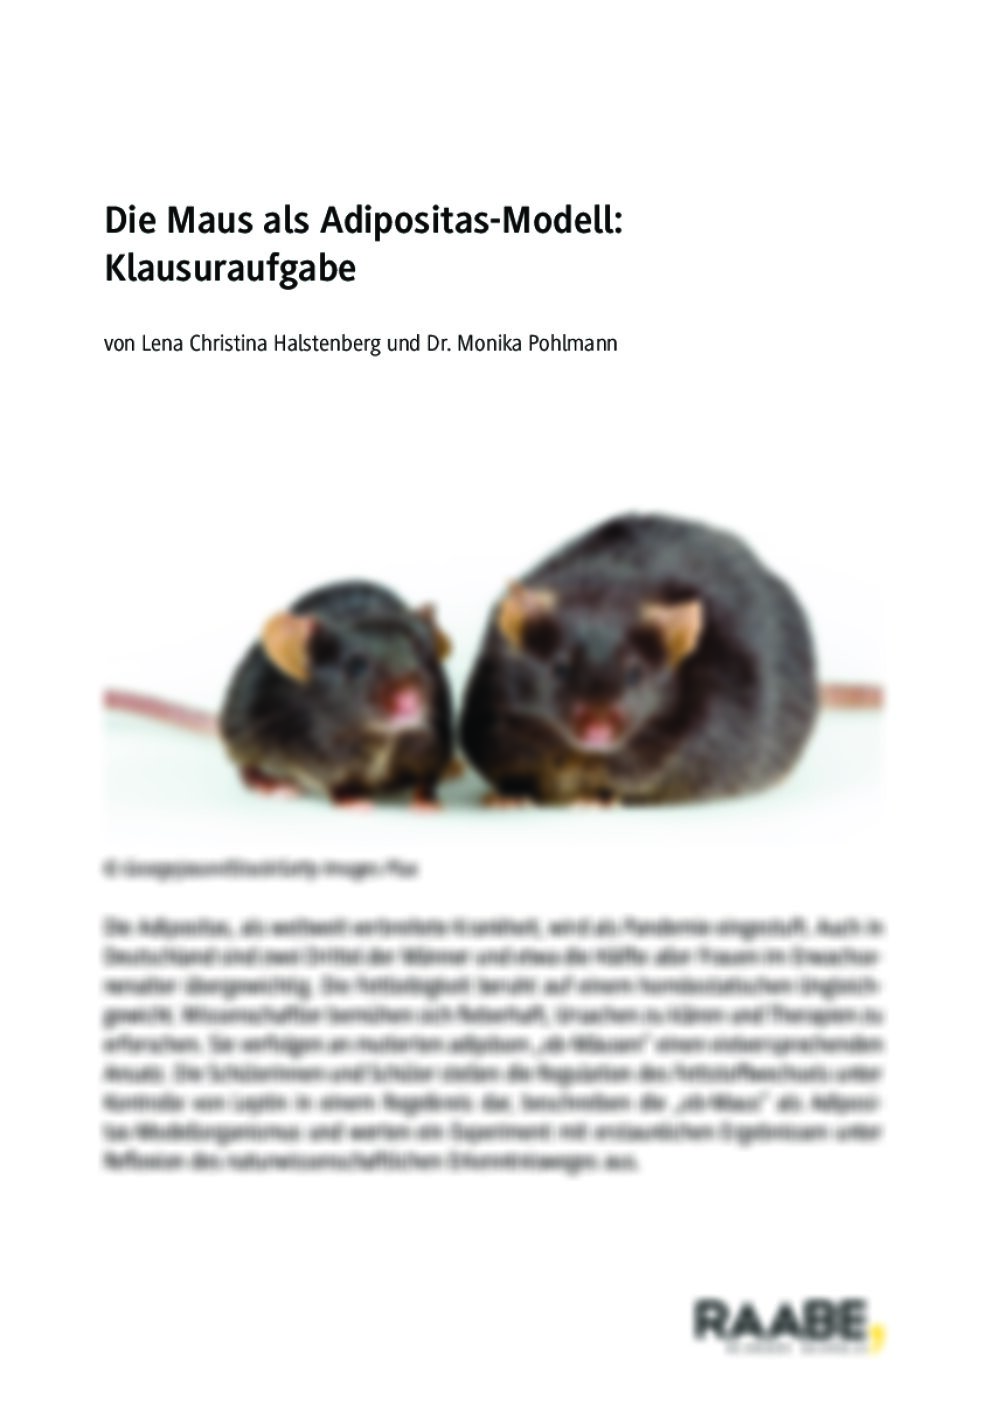 Die Maus als Adipositas-Modell: Klausuraufgabe - Seite 1